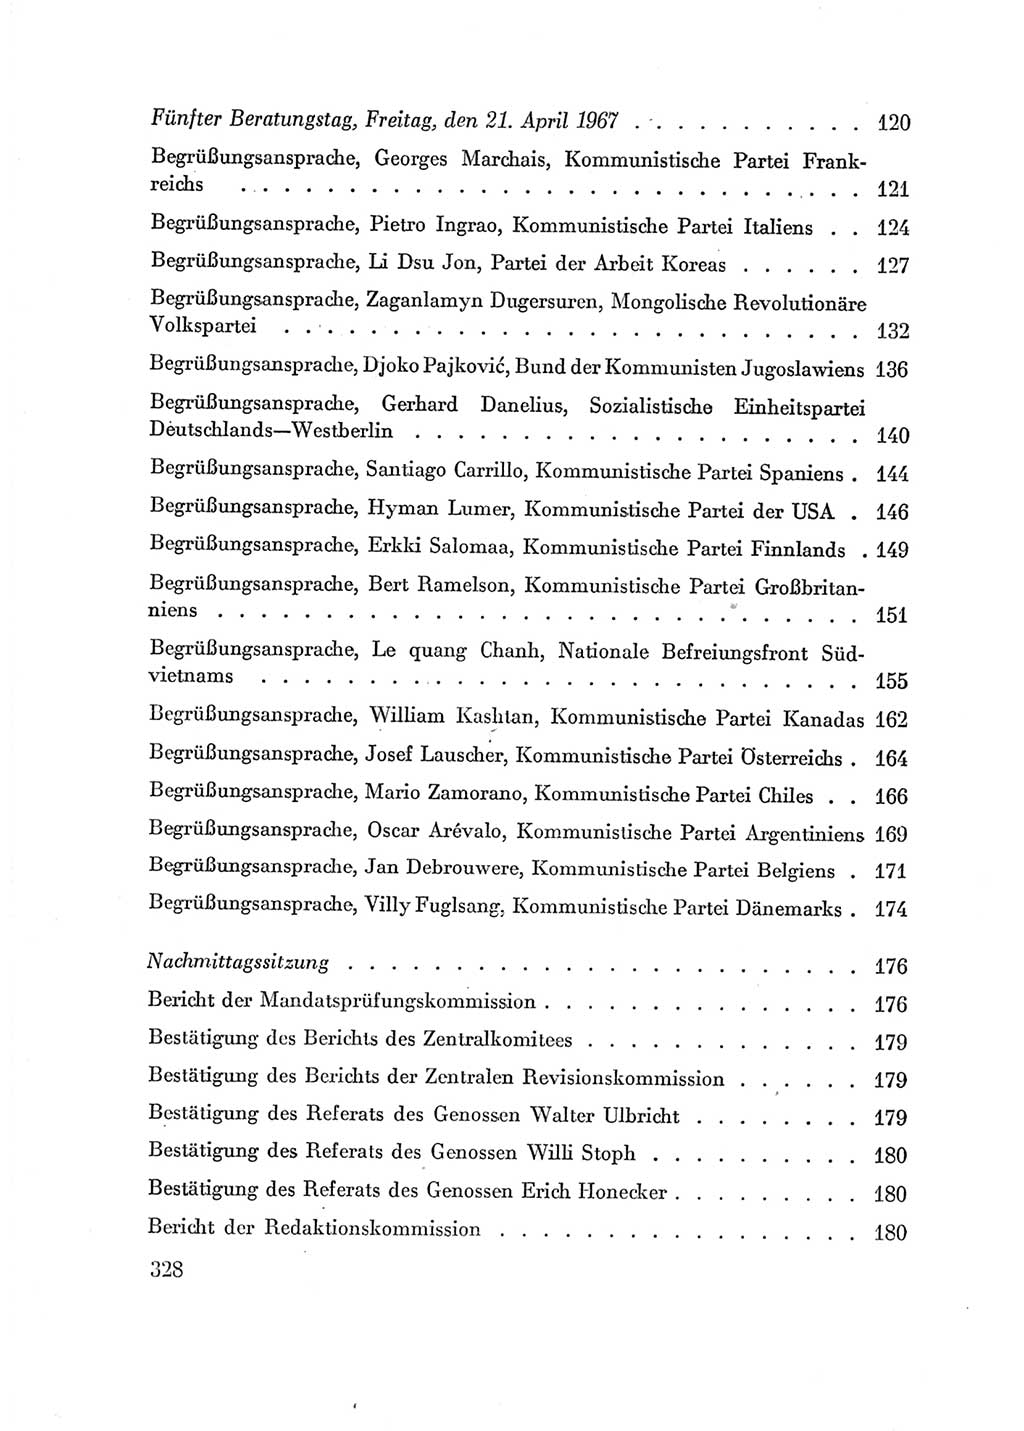 Protokoll der Verhandlungen des Ⅶ. Parteitages der Sozialistischen Einheitspartei Deutschlands (SED) [Deutsche Demokratische Republik (DDR)] 1967, Band Ⅱ, Seite 328 (Prot. Verh. Ⅶ. PT SED DDR 1967, Bd. Ⅱ, S. 328)